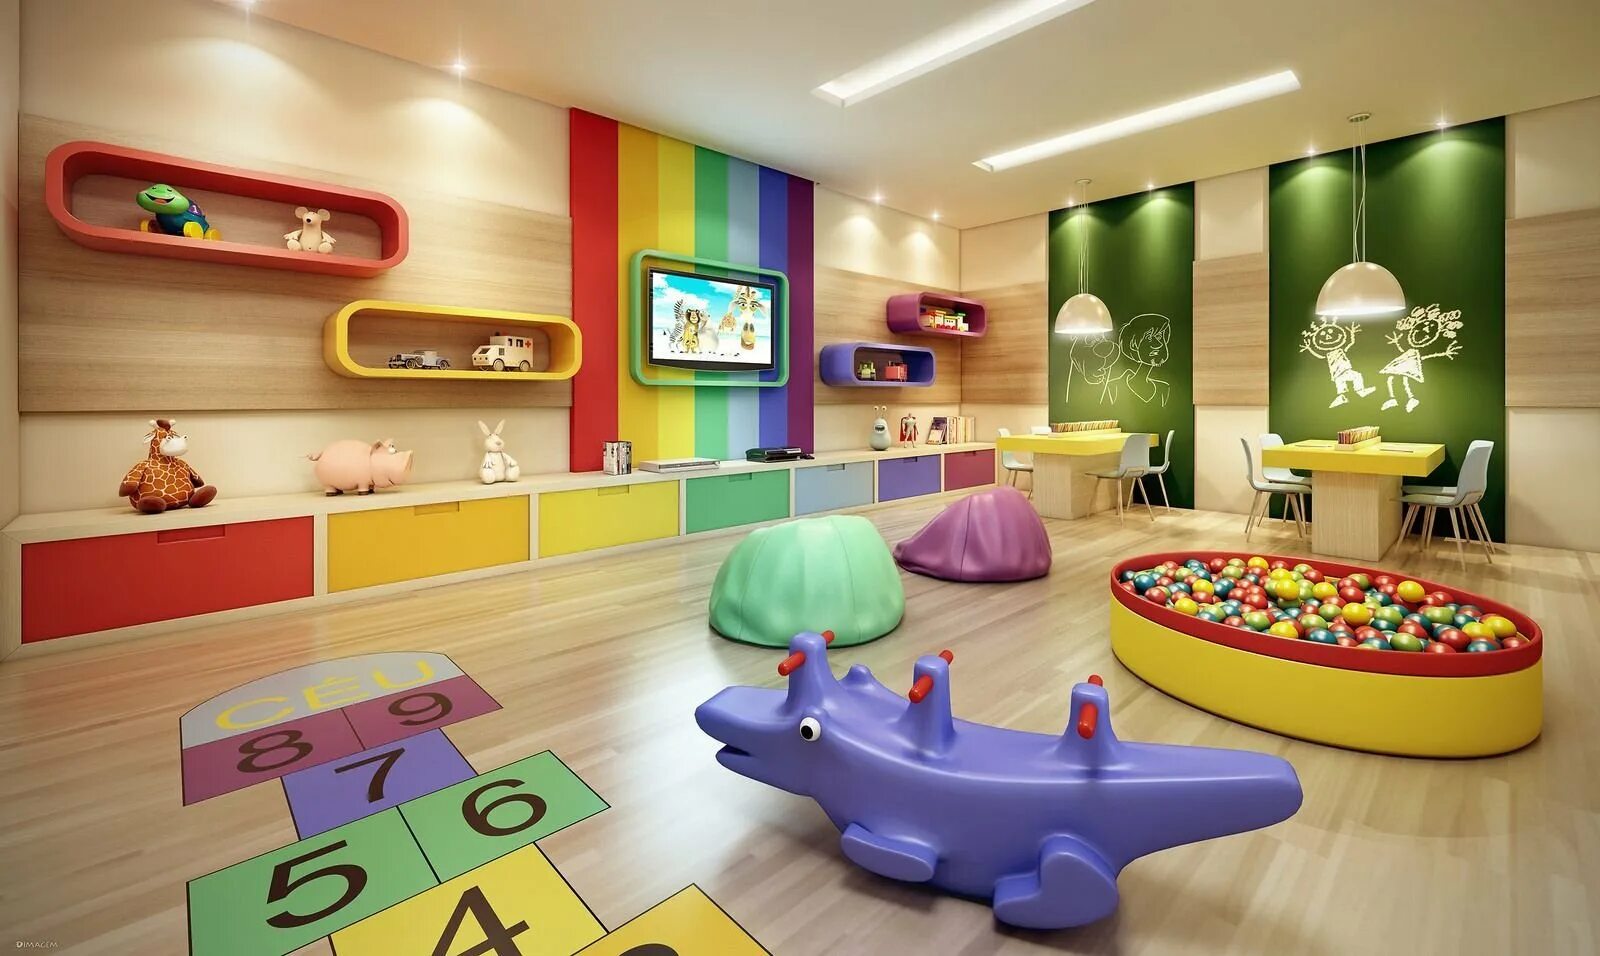 Какая игровая комната. Игровая комната. Детская игровая комната. Развлекательная комната для детей. Интерьер игровой комнаты.